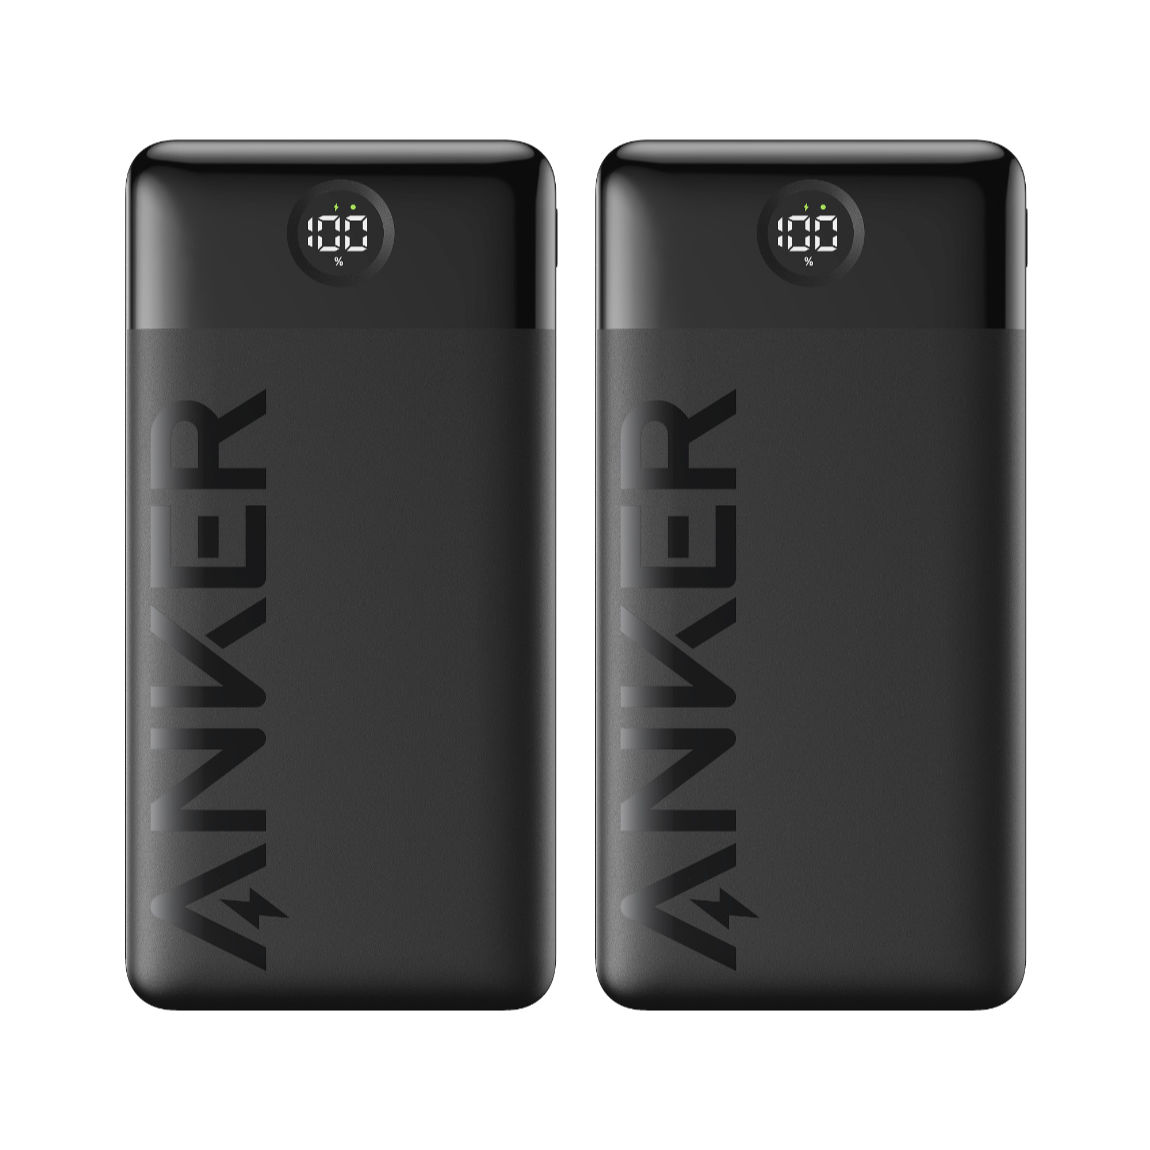 Anker Power Bank 325 – USB-C Powerbank mit 20.000 mAh 2er-Pack – Deal, Schnäppchen, sparen